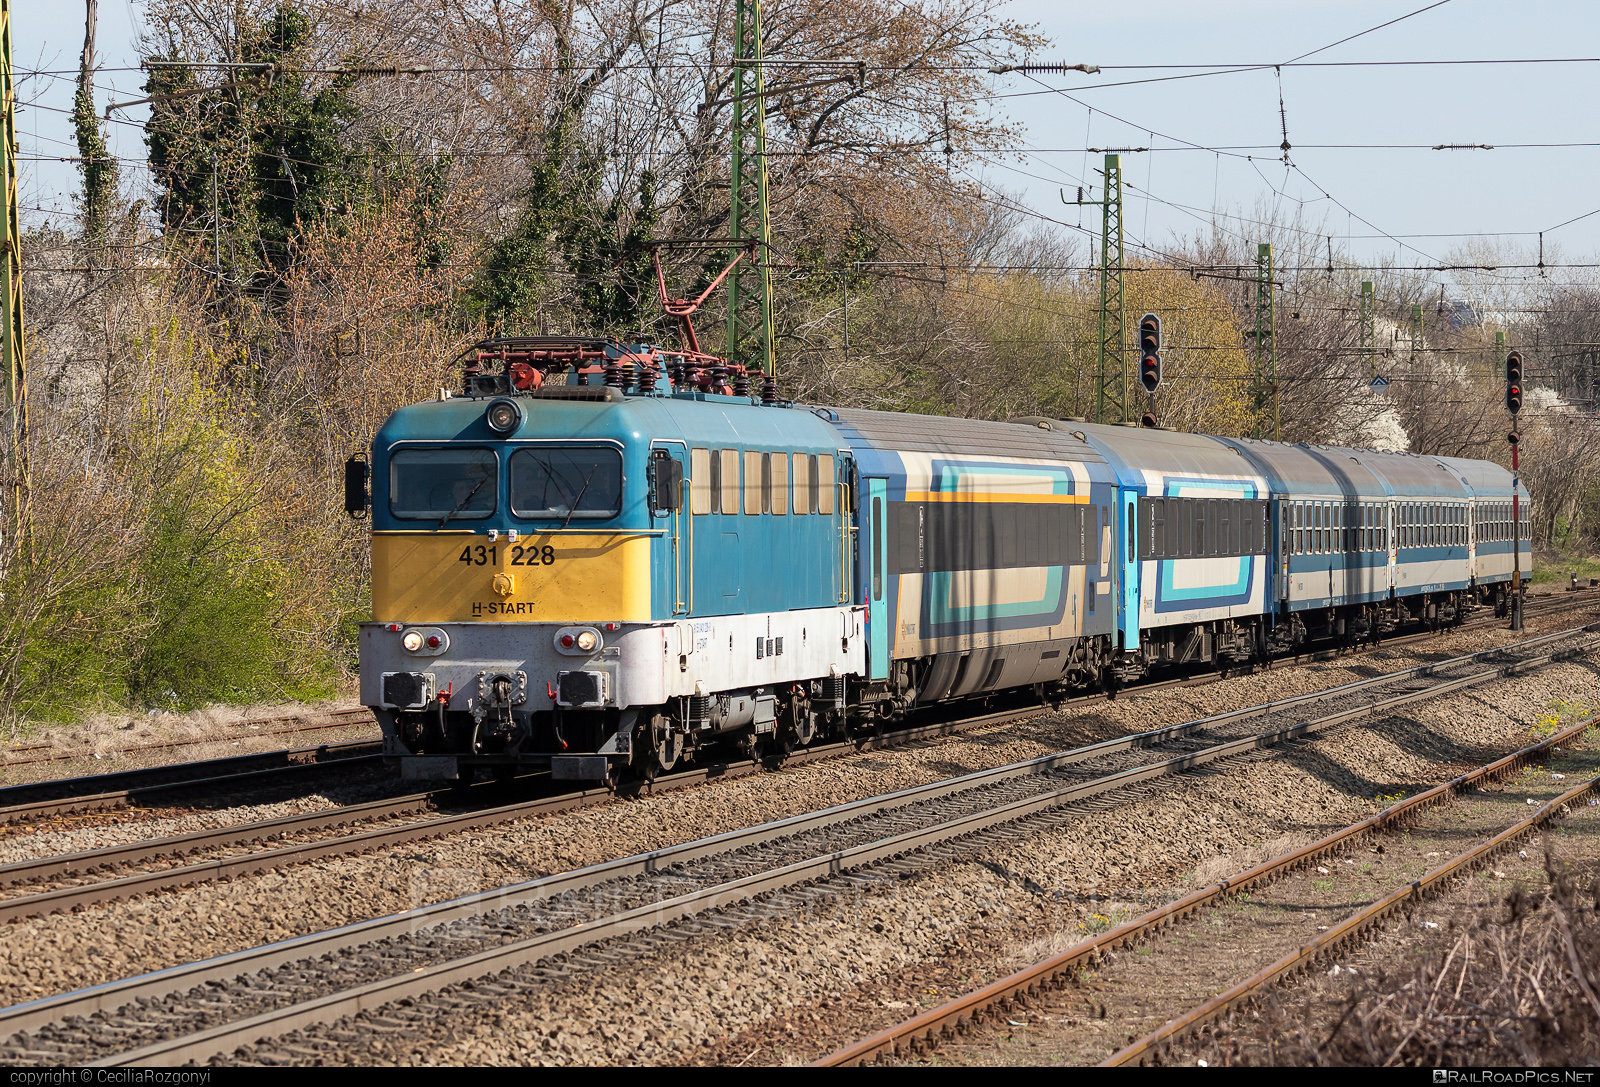 Ganz-MÁVAG VM14-17 - 431 228 operated by MÁV-START ZRt. #ganz43 #ganz431 #ganzmavag #ganzmavag43 #ganzmavag431 #ganzmavagvm1417 #mav #mavstart #mavstartzrt #v43locomotive